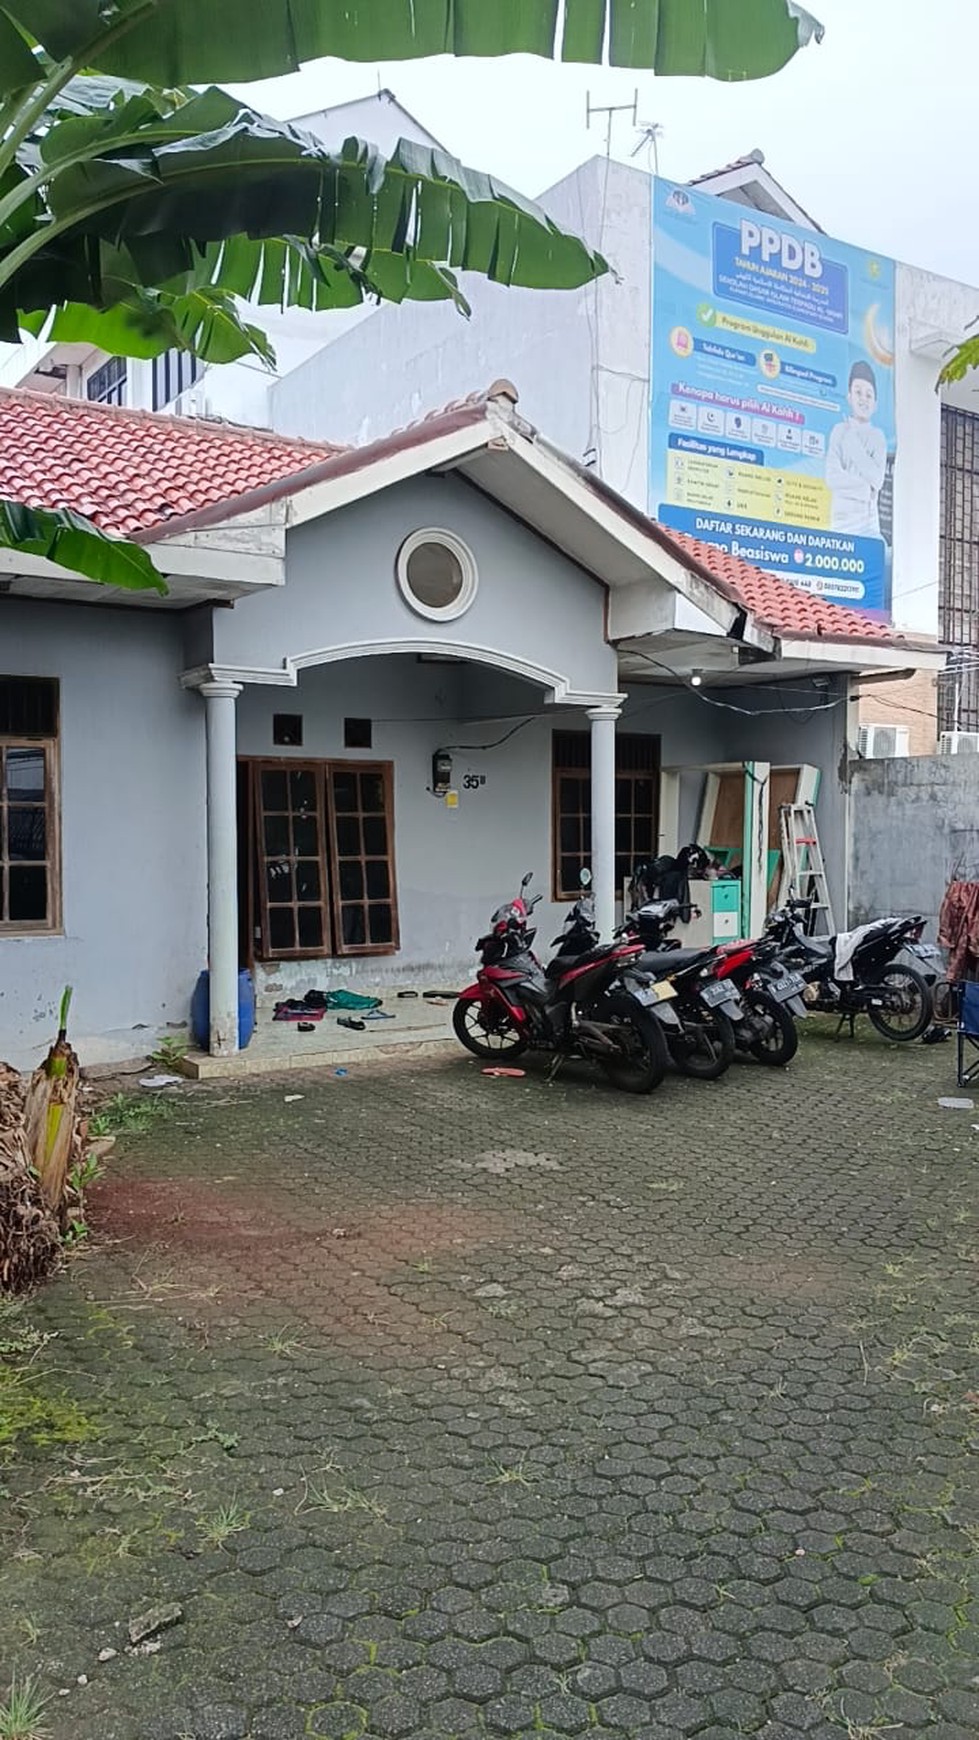 Dijual  Rumah Asri Dan Usaha Kos Pintu Air/Gudang Air, Ciracas Jakarta Timur